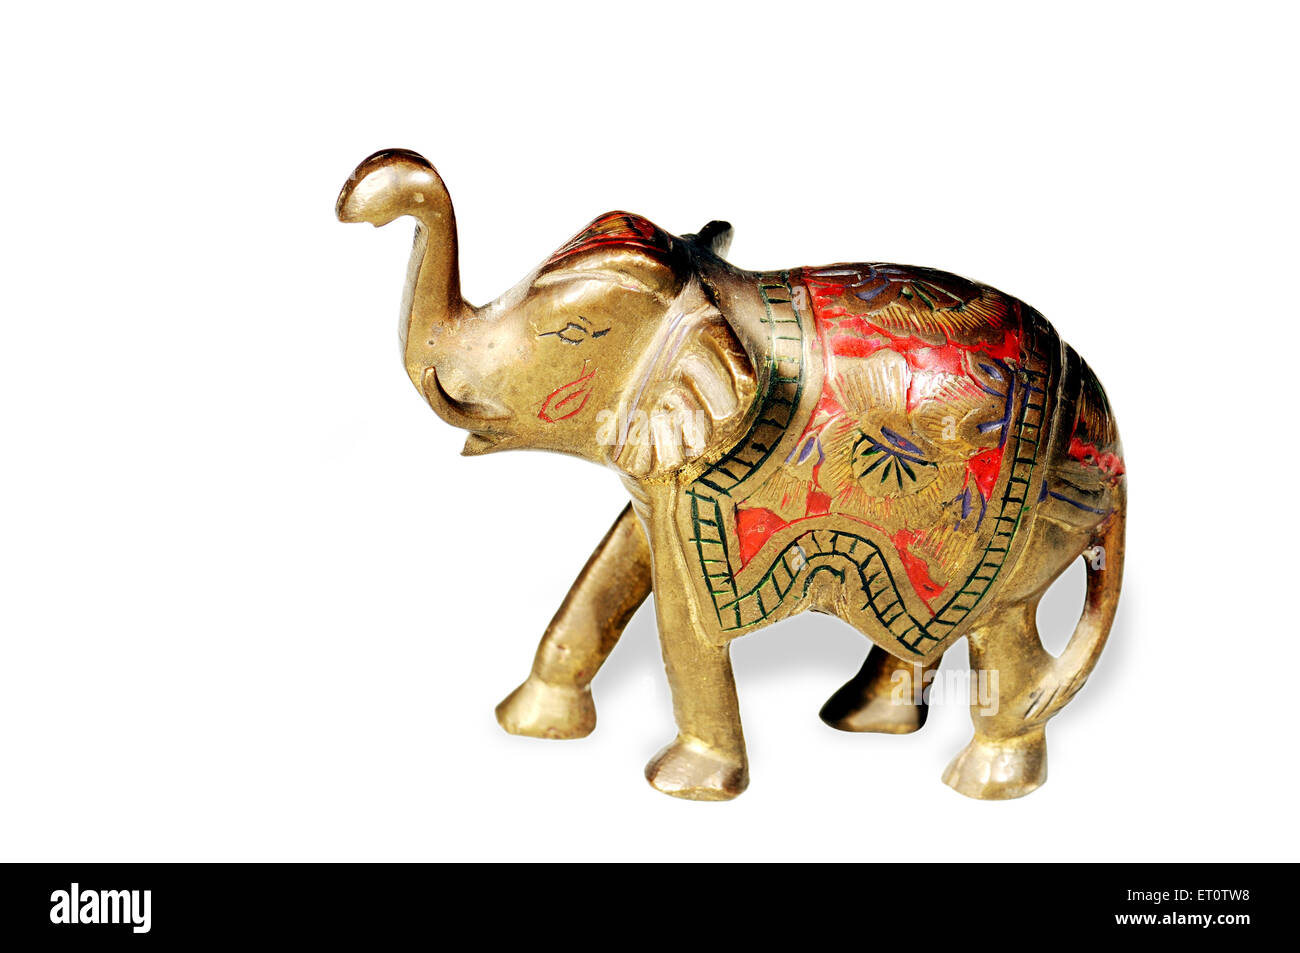 L'éléphant ; artisanat sur fond blanc ; Inde Banque D'Images